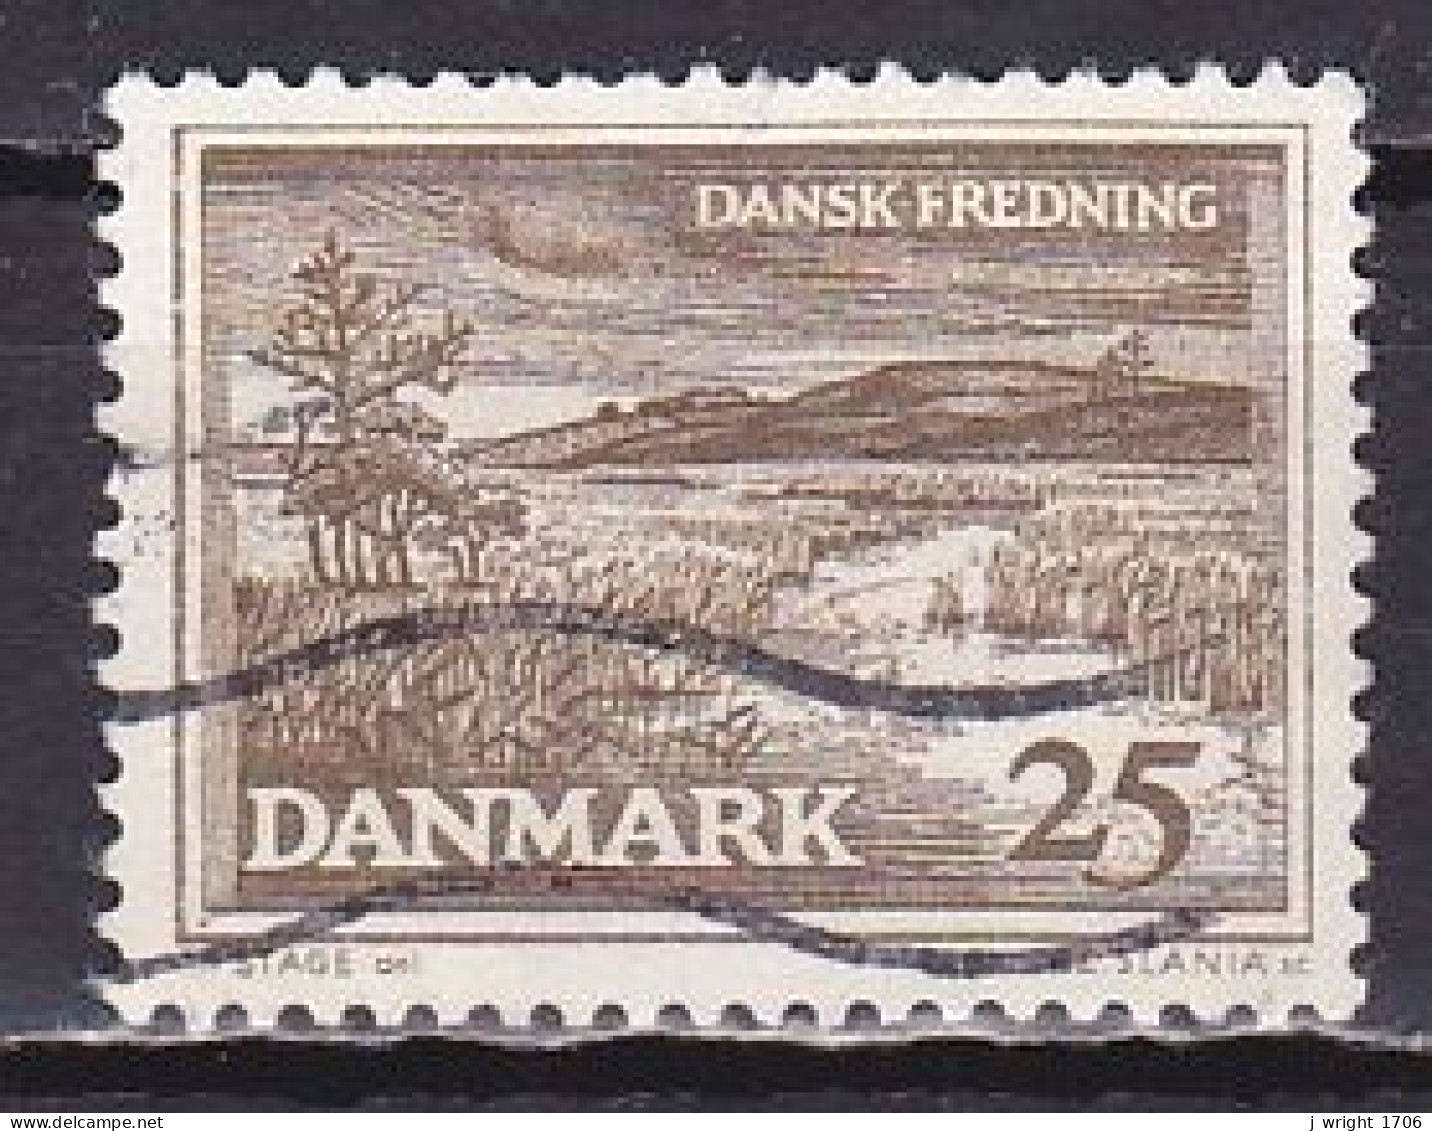 Denmark, 1964, Natural Preservation/R. Karup Landscape, 25ø, USED - Usado